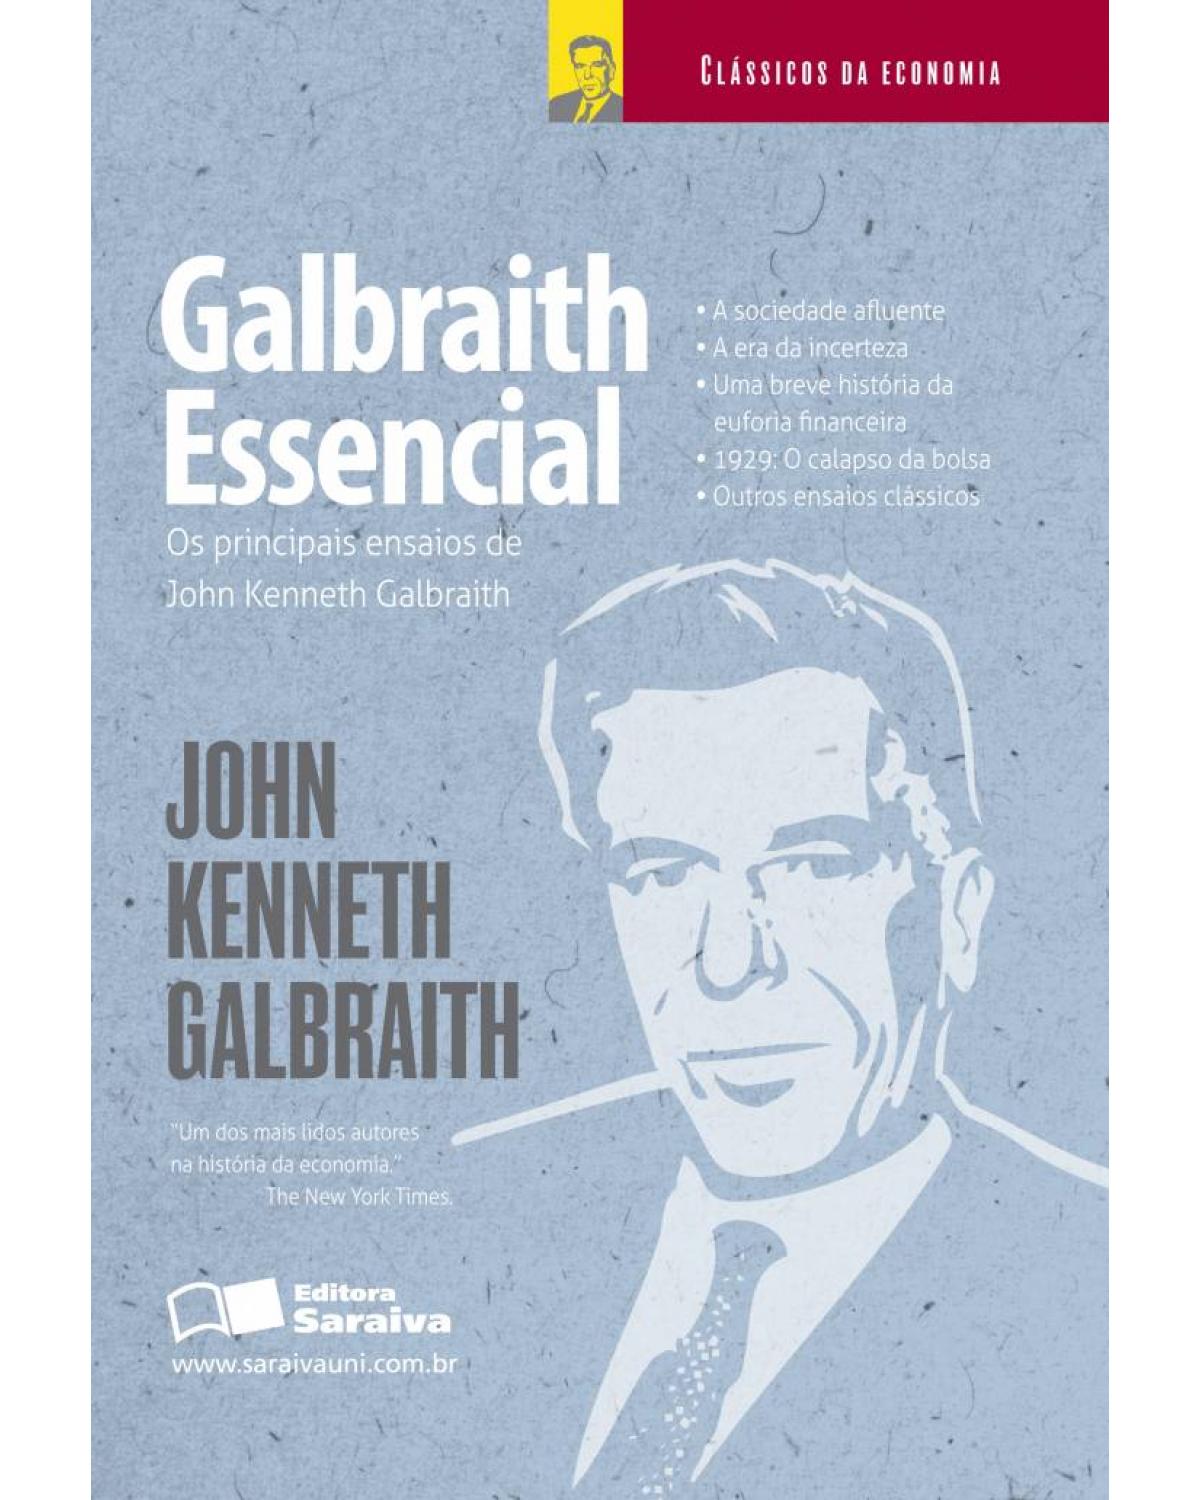 Galbraith essencial - os principais ensaios de John Kenneth Galbraith - 1ª Edição | 2012